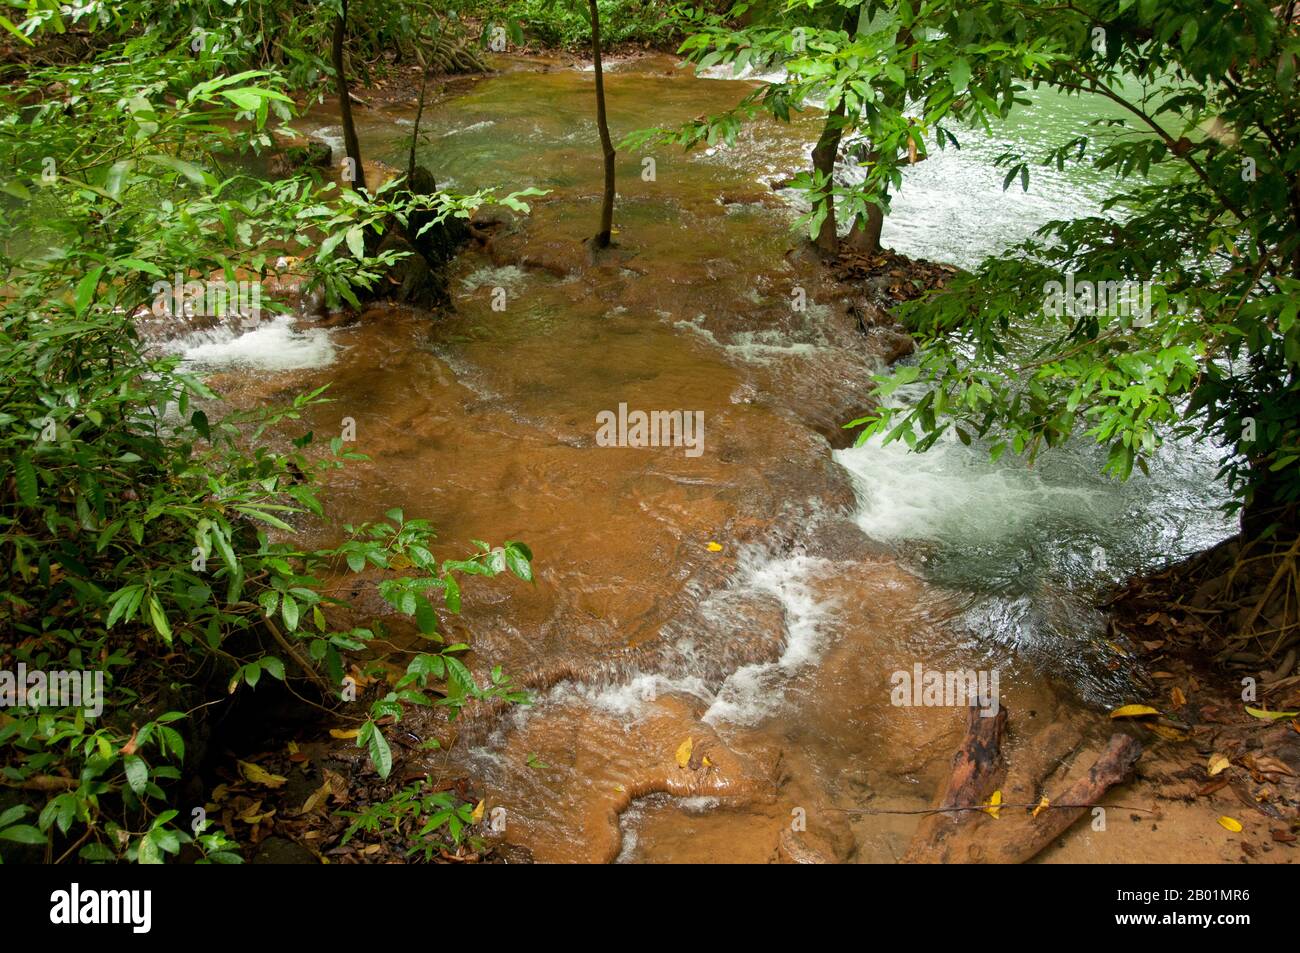 Thailandia: Una delle tante piscine color smeraldo del parco, rispetto al Bokkharani National Park, provincia di Krabi. Il Parco Nazionale di Than Bokkharani si trova nella provincia di Krabi a circa 45 chilometri (28 miglia) a nord-ovest della città di Krabi. Il parco copre un'area di 121 chilometri quadrati (47 miglia quadrate) ed è caratterizzato da una serie di affioramenti calcarei, foreste pluviali sempreverdi, foreste di mangrovie, torbiere e molte isole. Ci sono anche numerose grotte e complessi rupestri con alcune spettacolari stalagmiti e stalattiti. Il Bokkharani è incentrato su due famose grotte, Tham Lot e Tham Phi Hua. Foto Stock